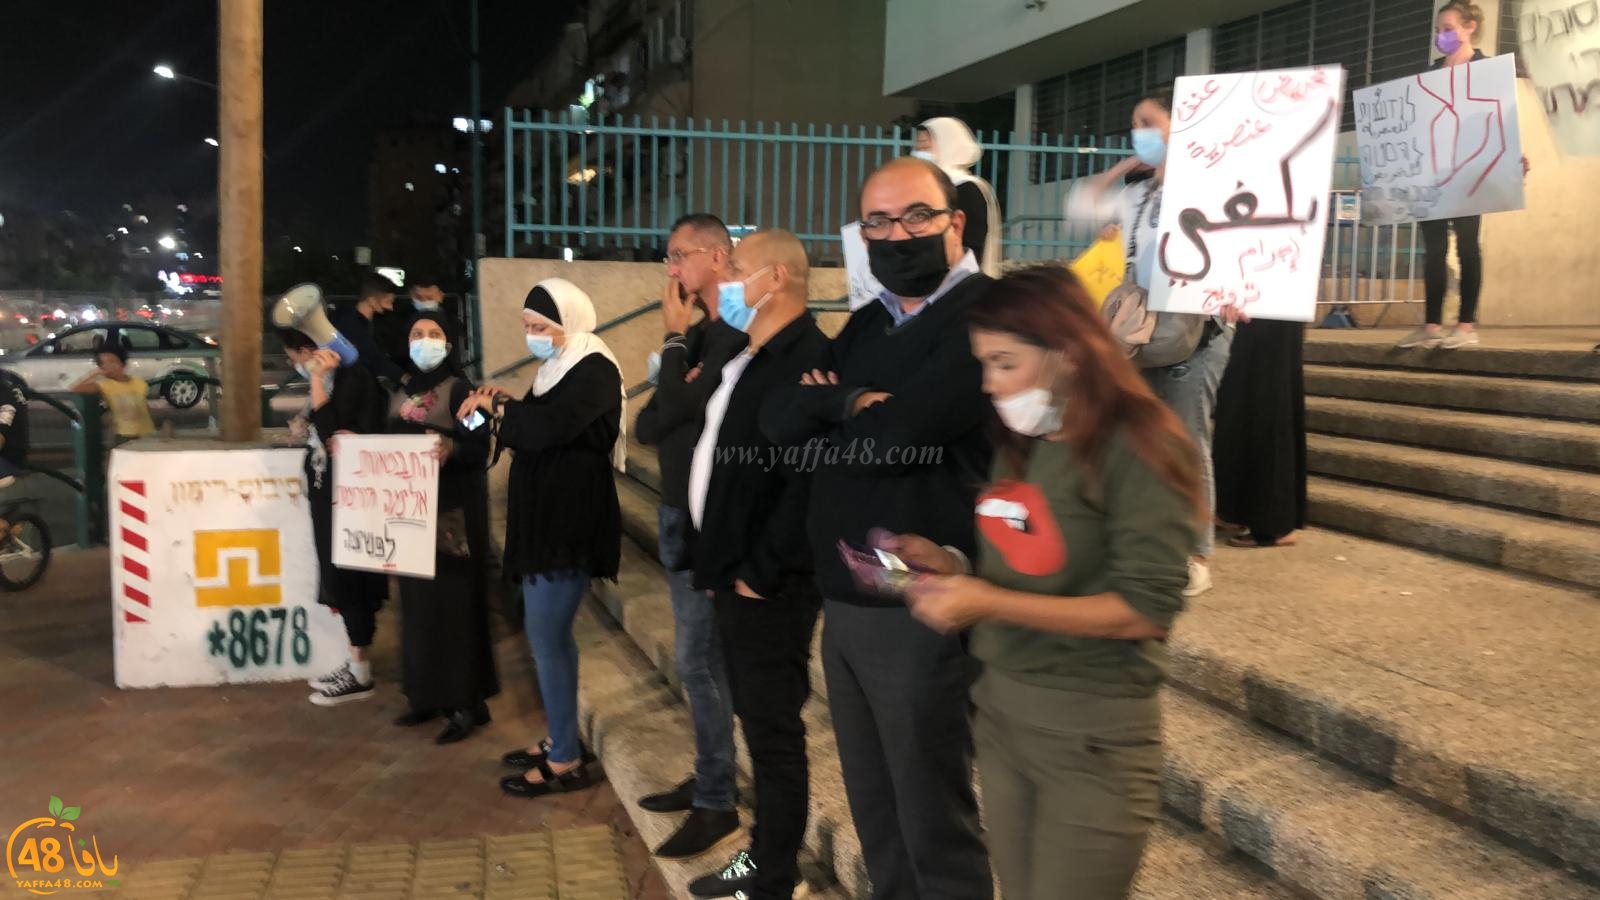   اللد: وقفة احتجاجية ضد تصريحات رئيس البلدية بحق المواطنين العرب 